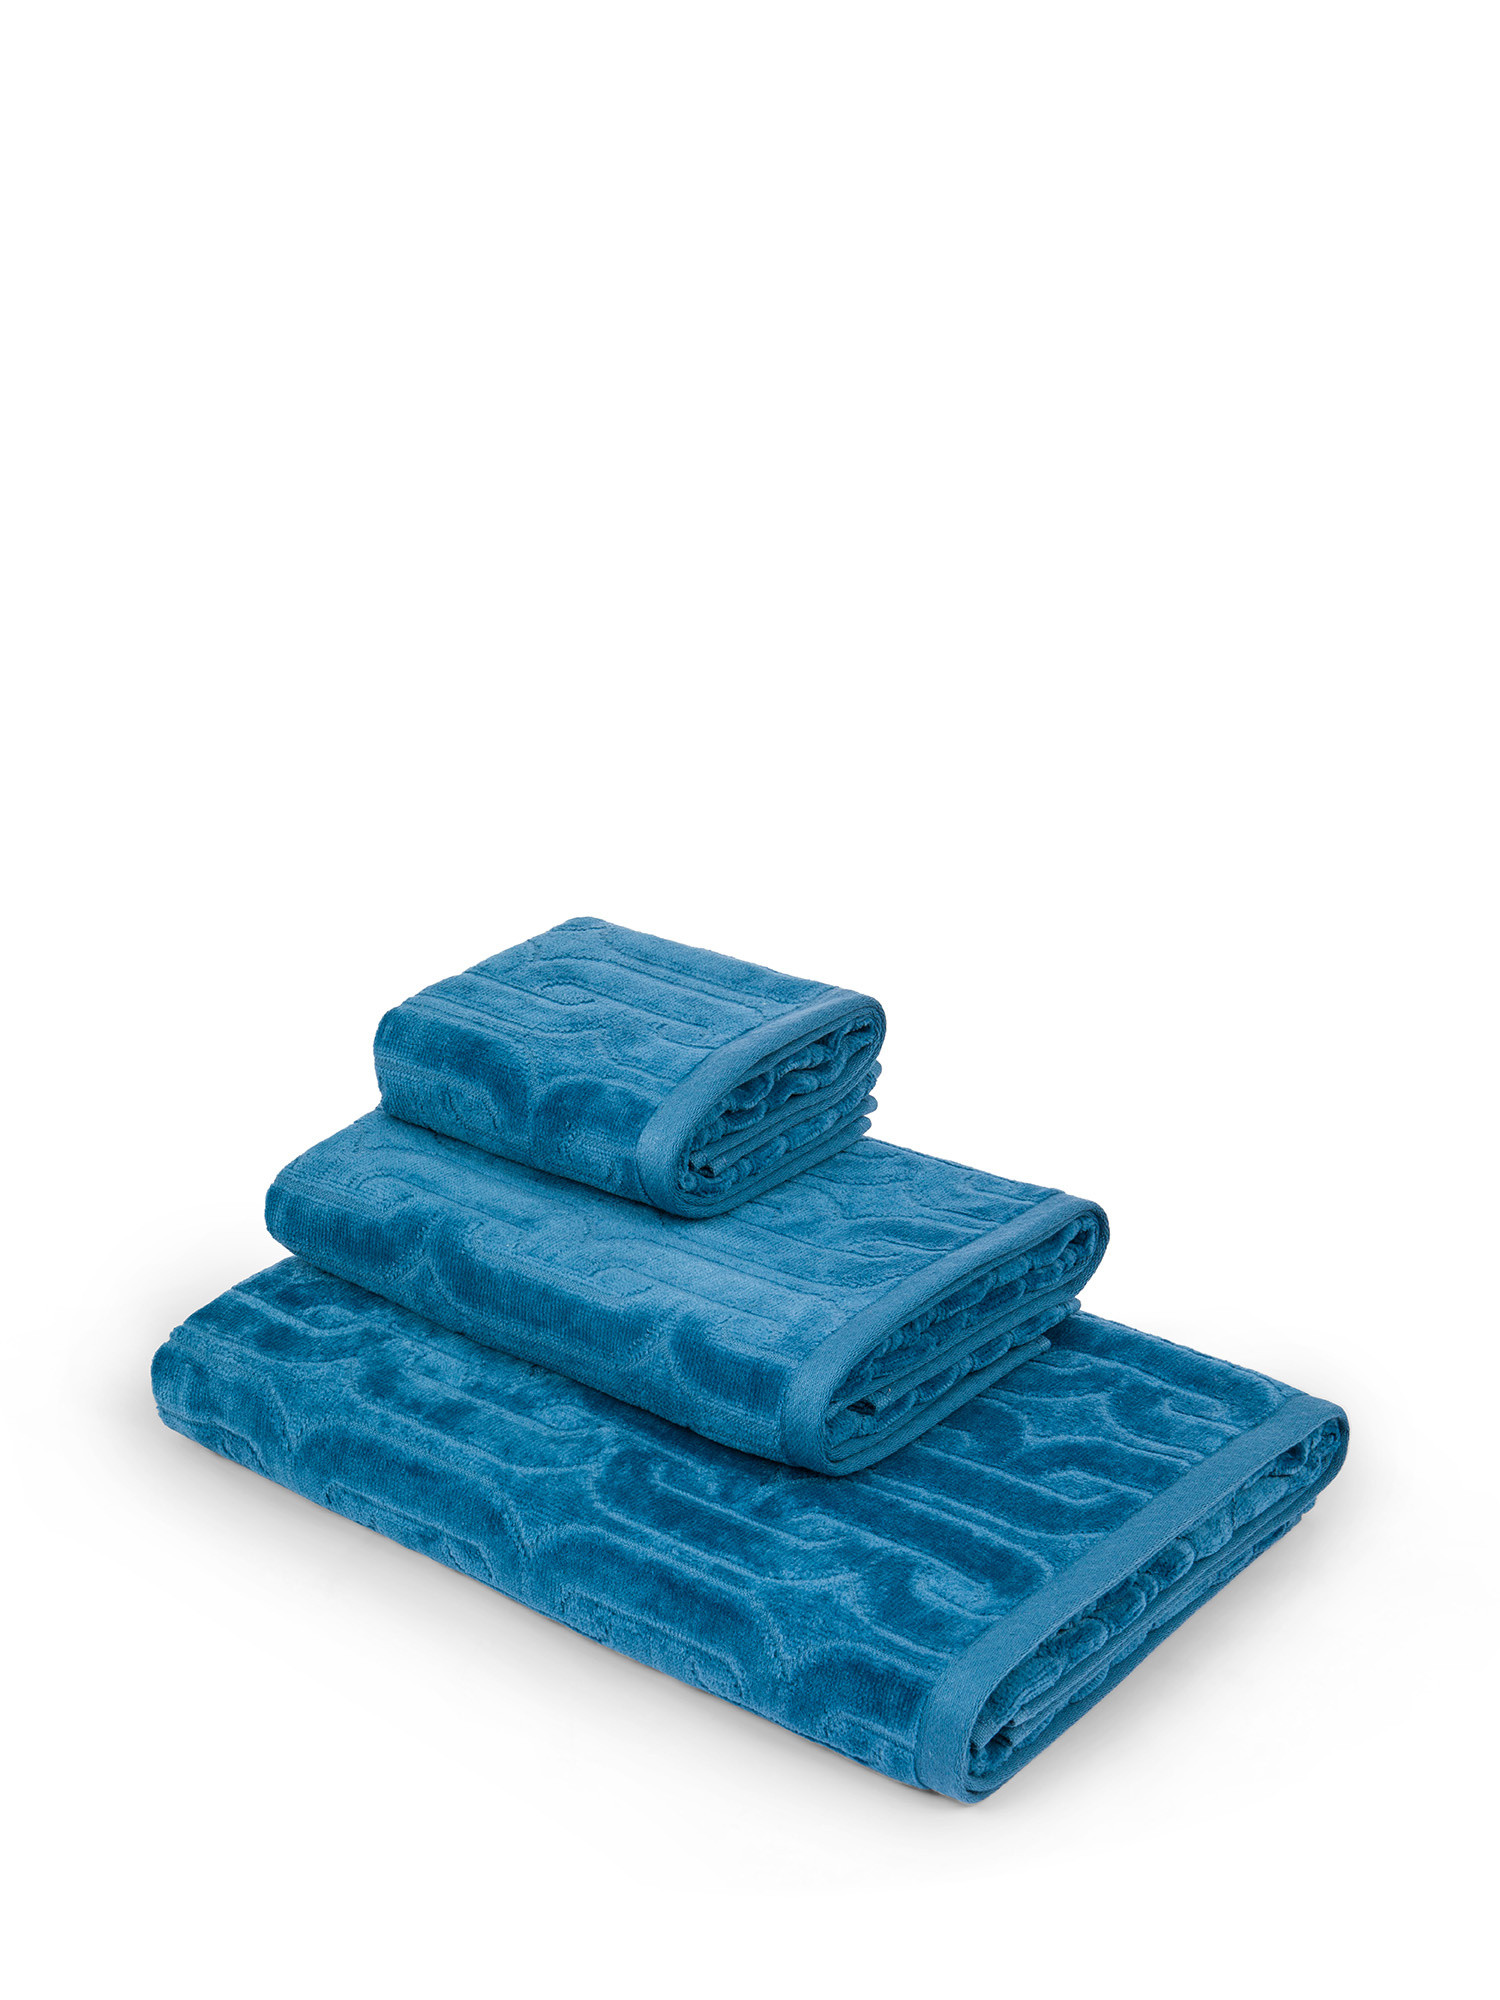 Asciugamano in velour di cotone con lavorazione geometrica a rilievo, Blu, large image number 0